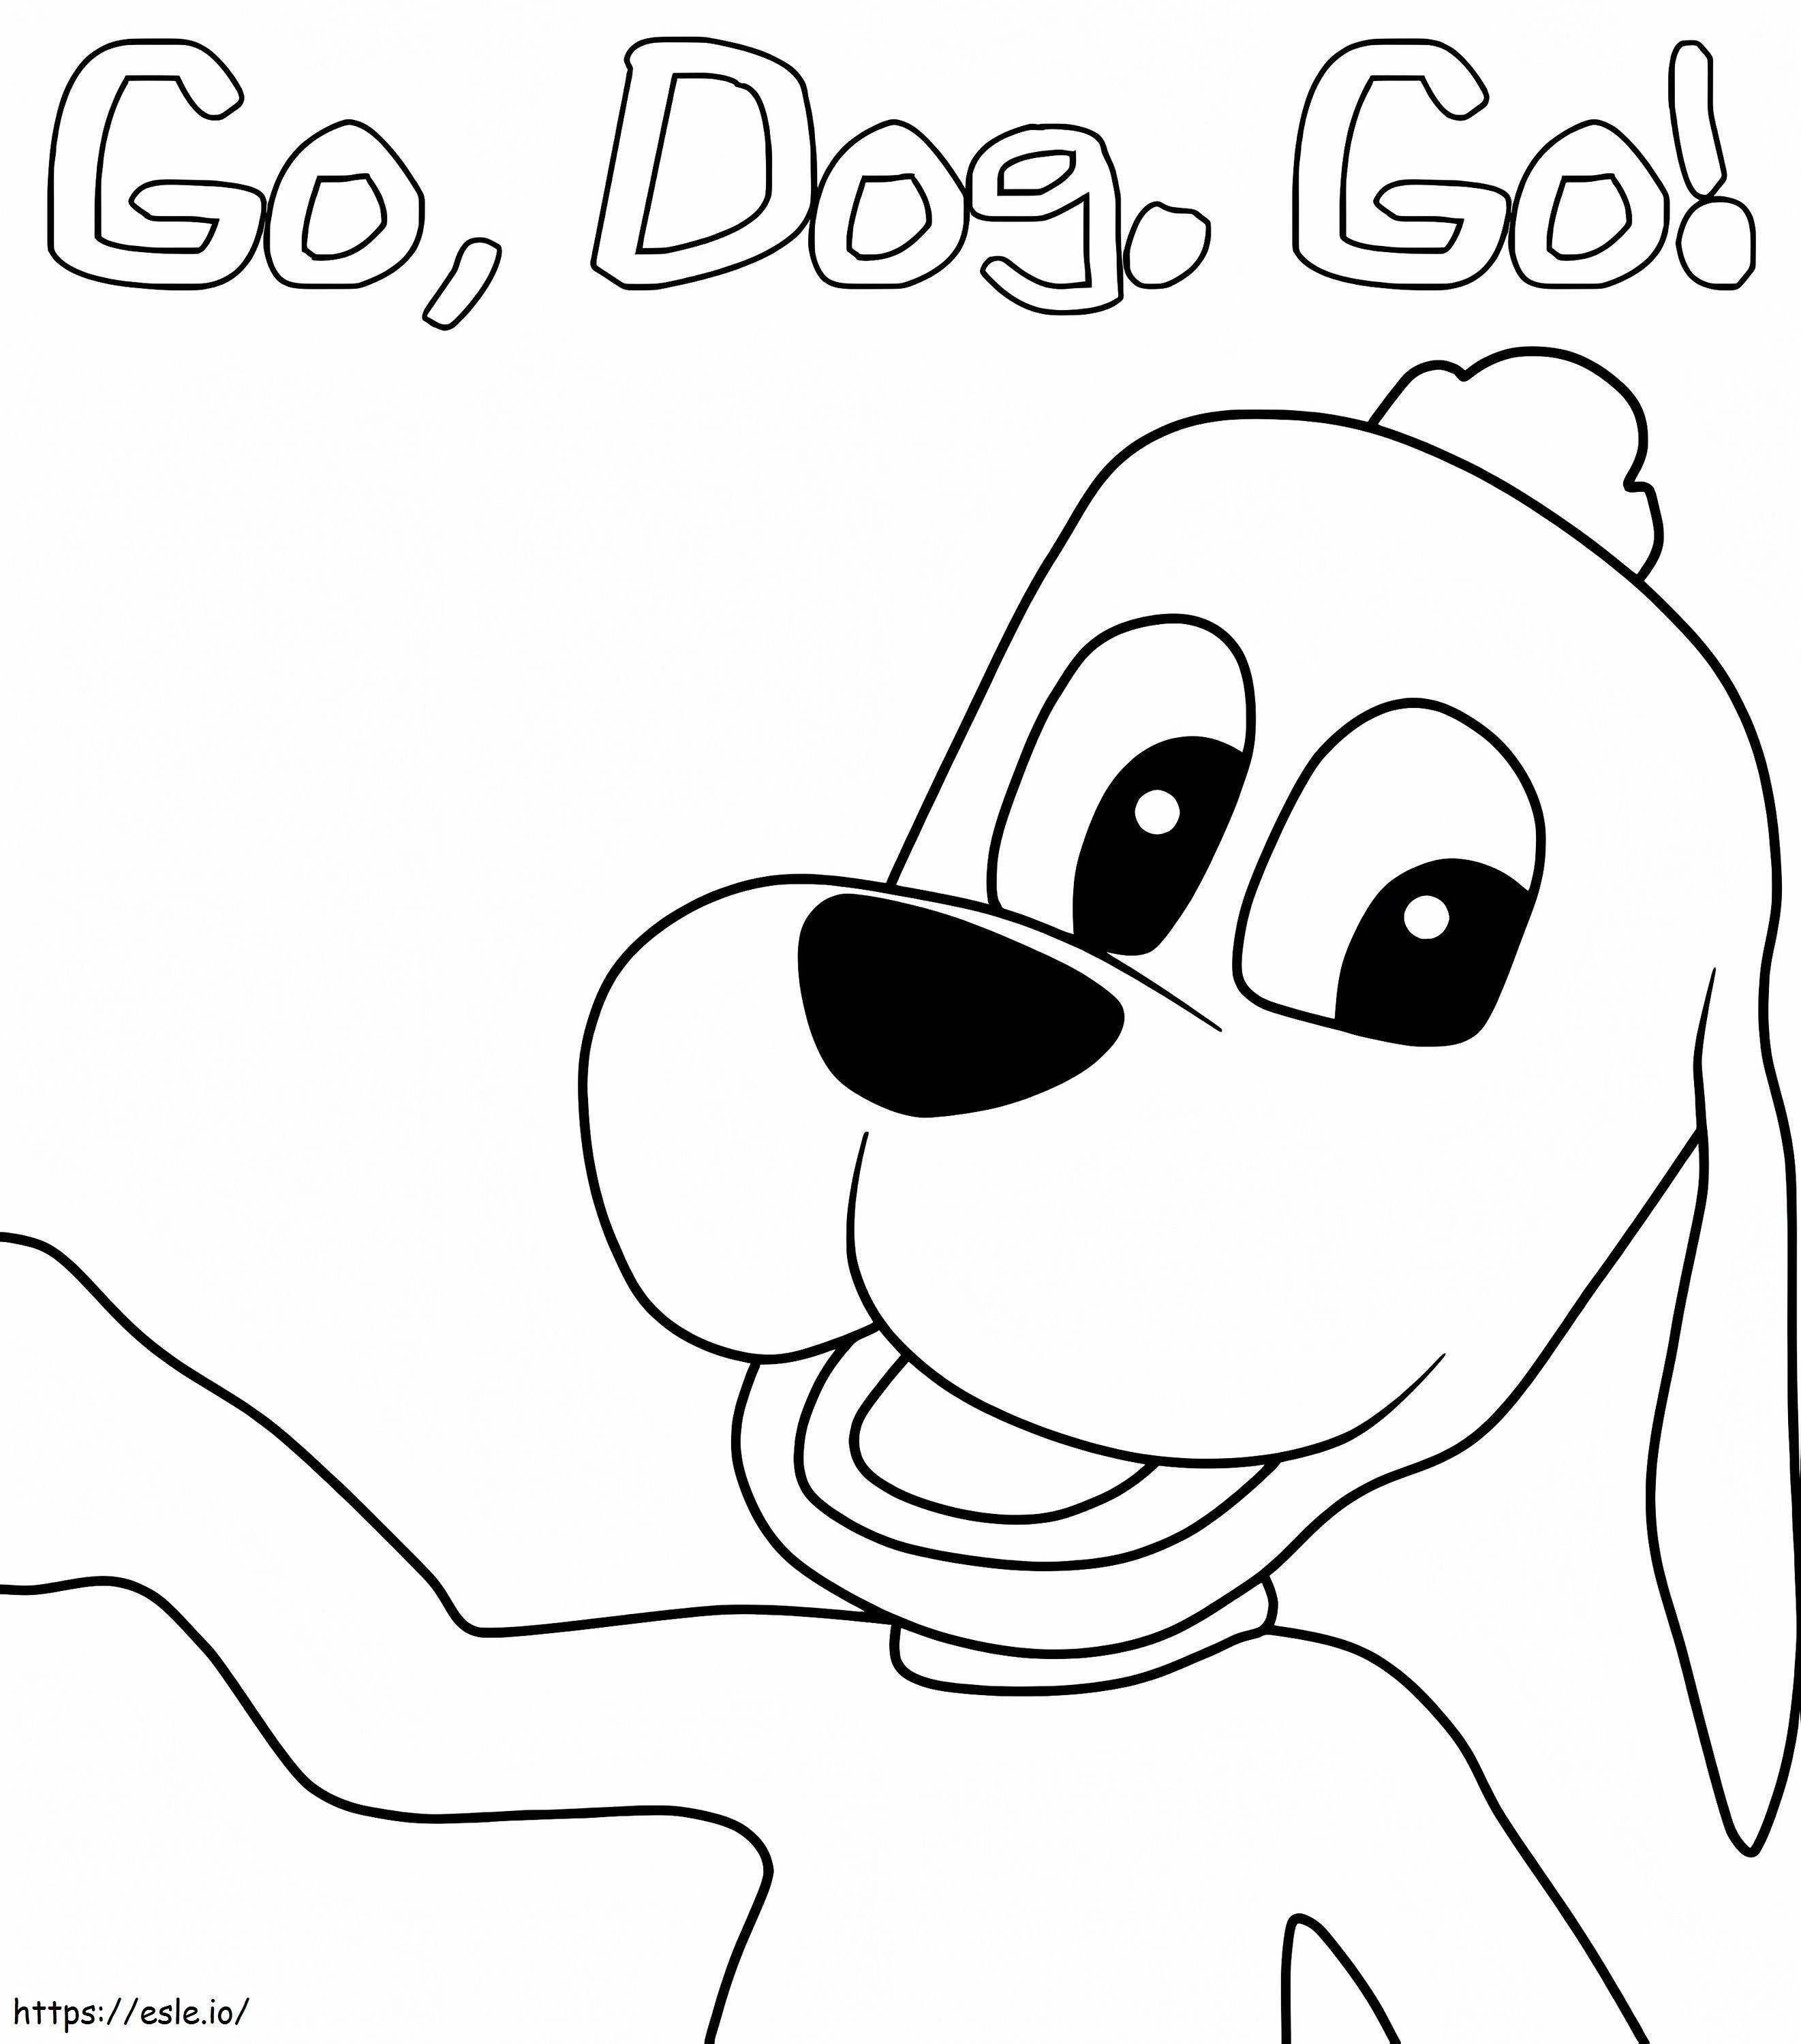 Tag Barker de Go Dog Go para colorear